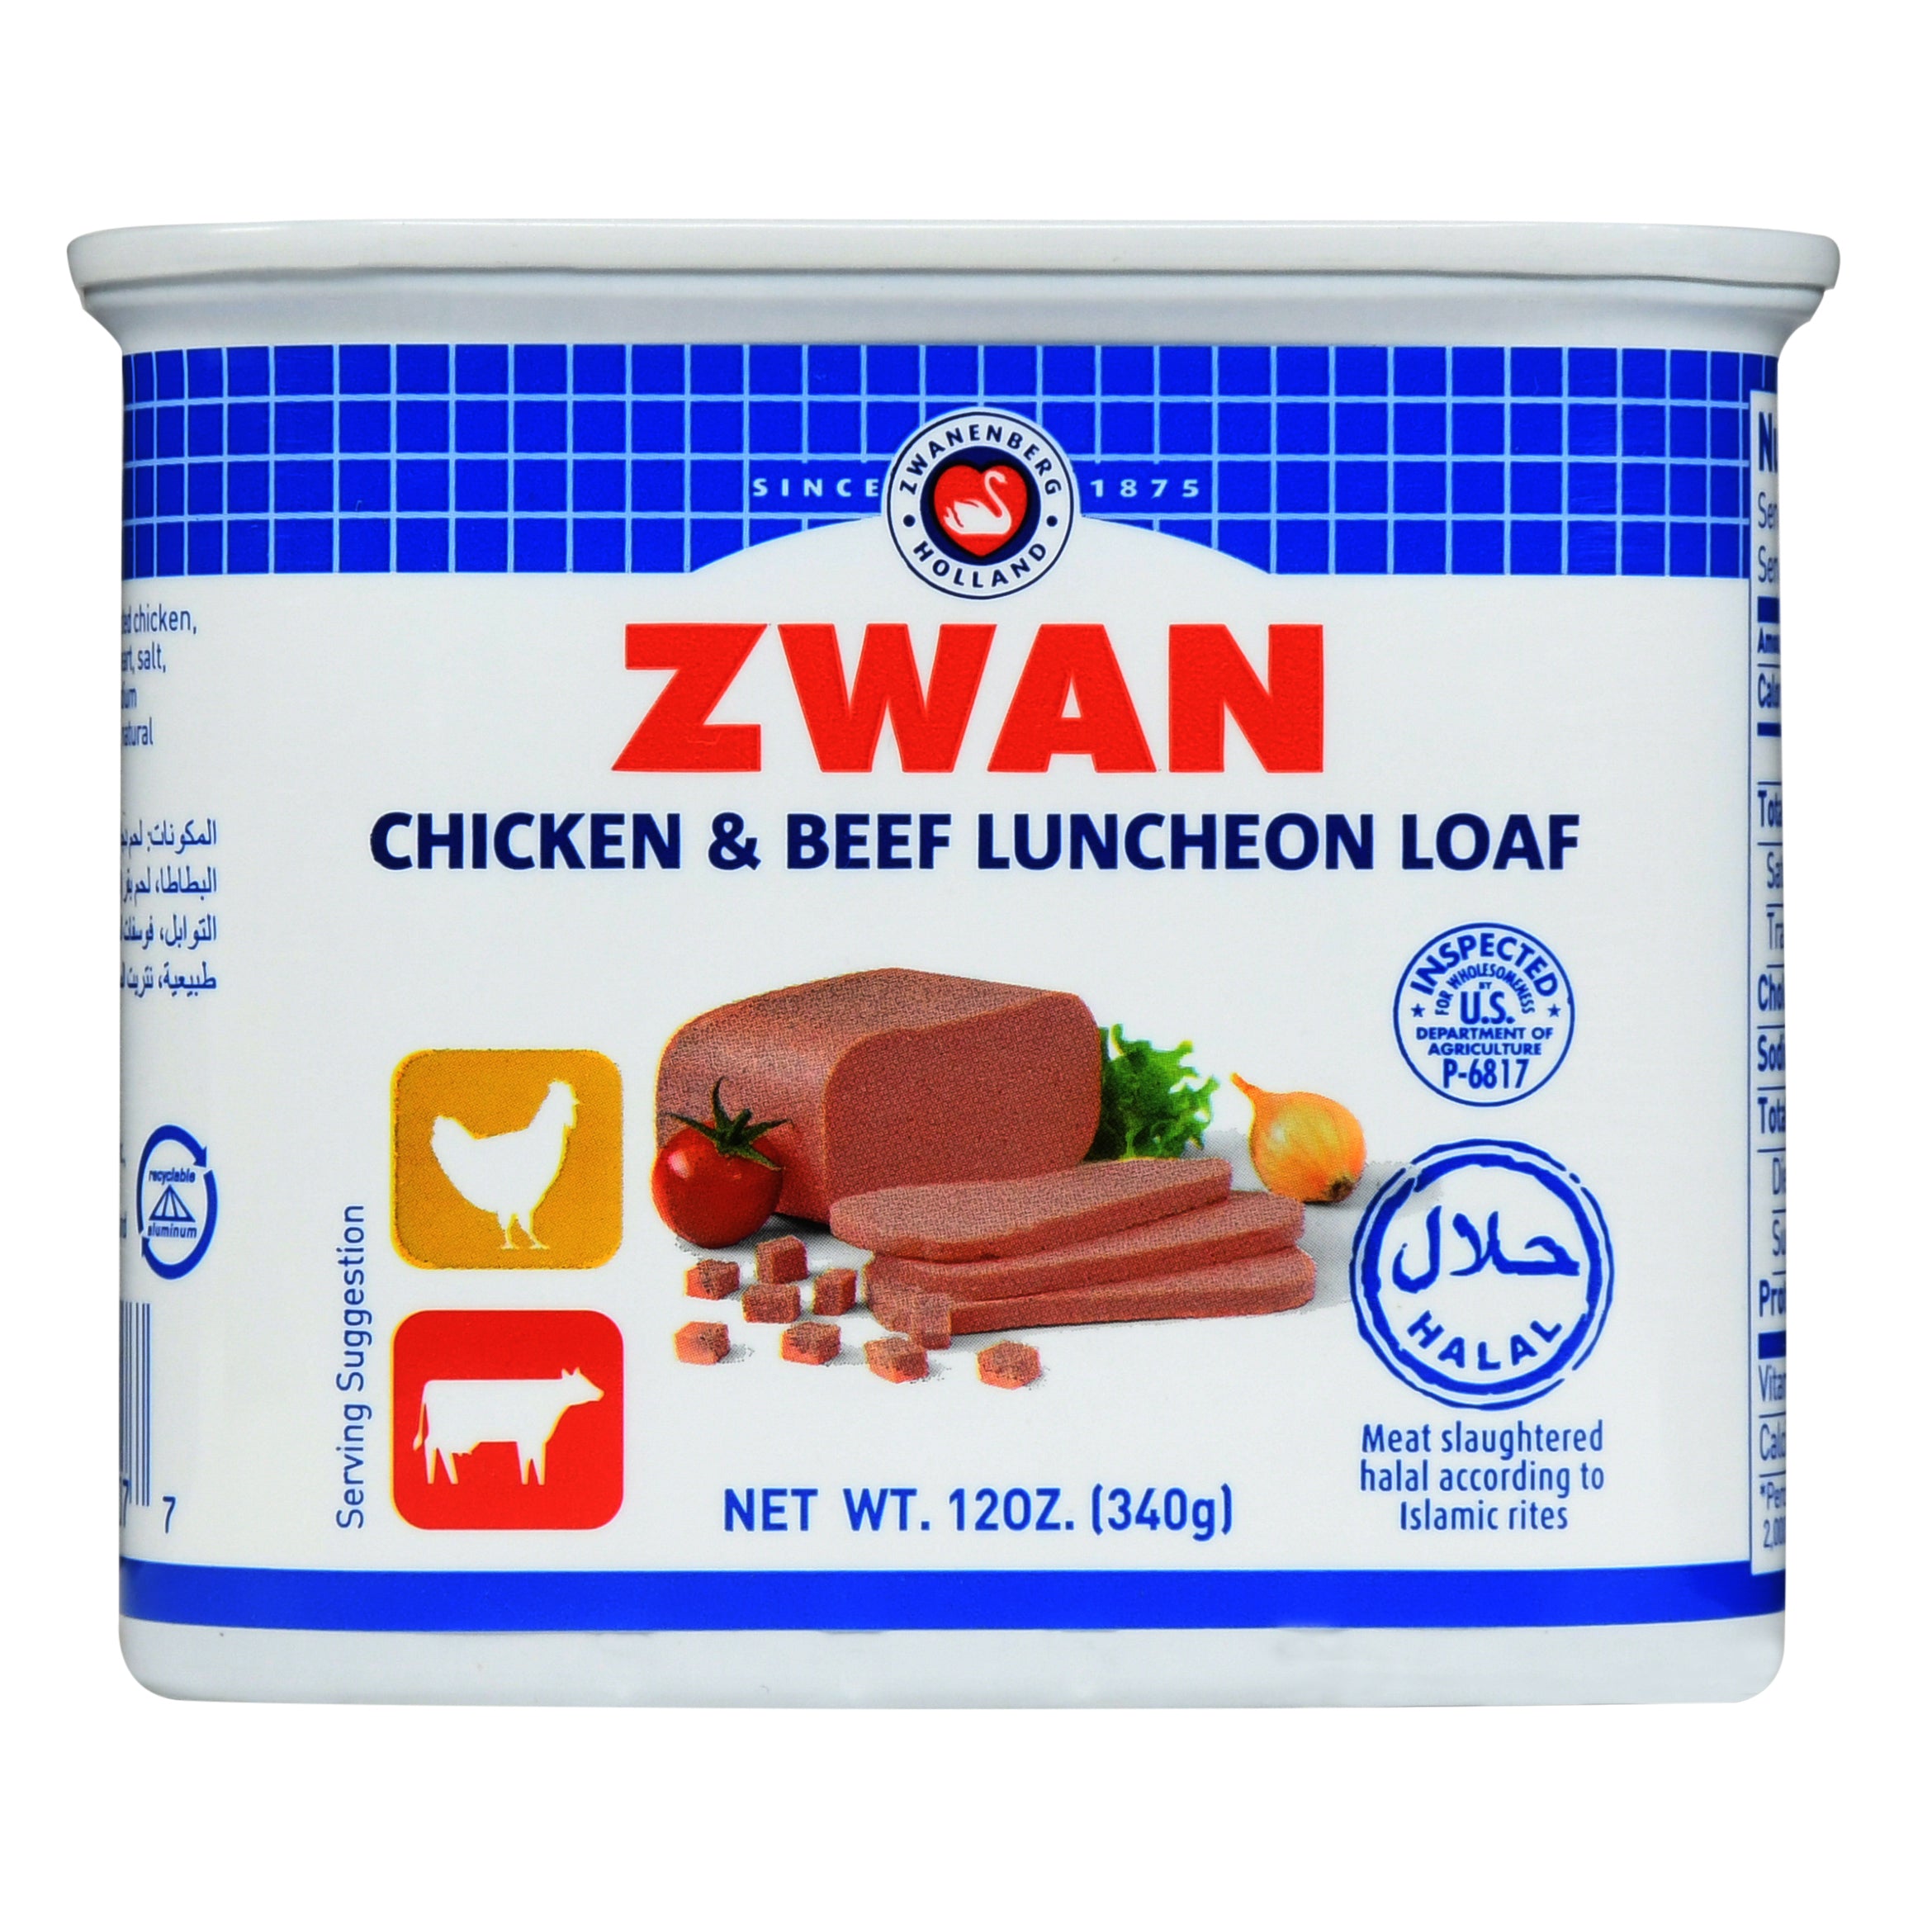 Zwan Chicken & Beef Luncheon Meat